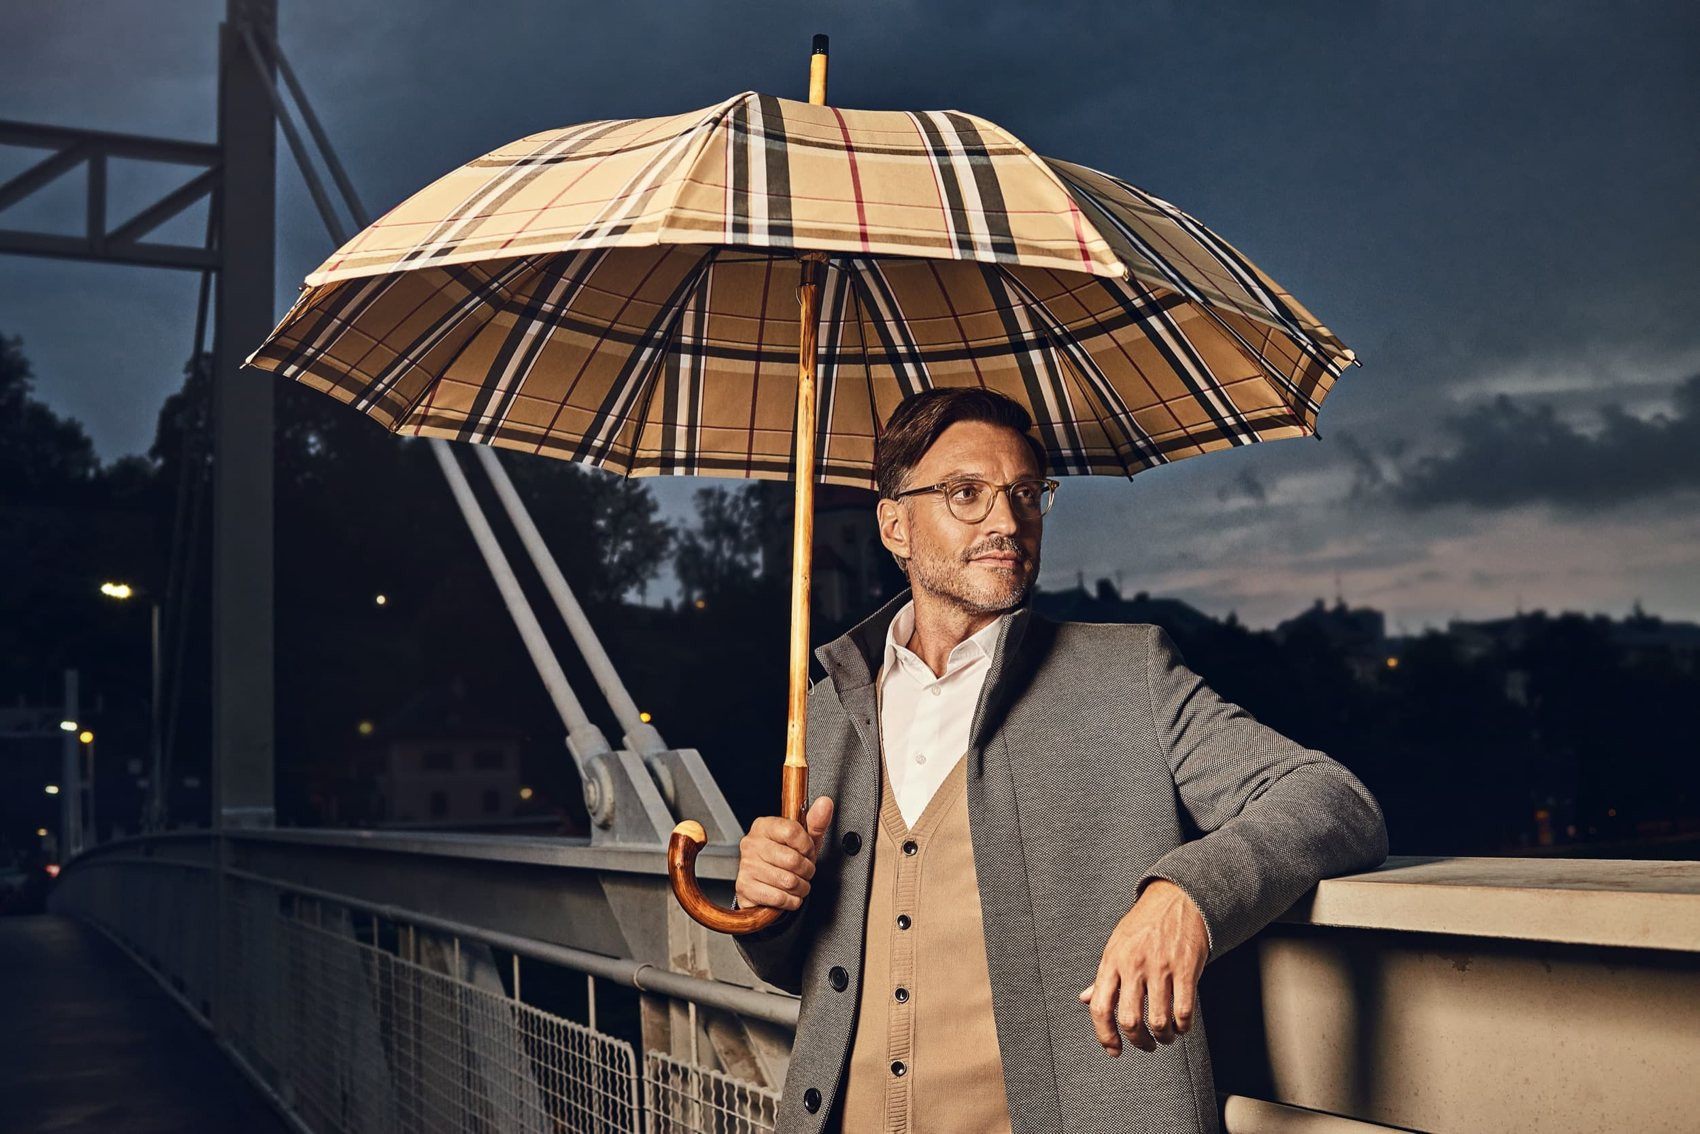 Einzigartiges mit Stil: Regenschirm aus der doppler Manufaktur: Kastanie  Wurzel Zürs bei UNIKATOO